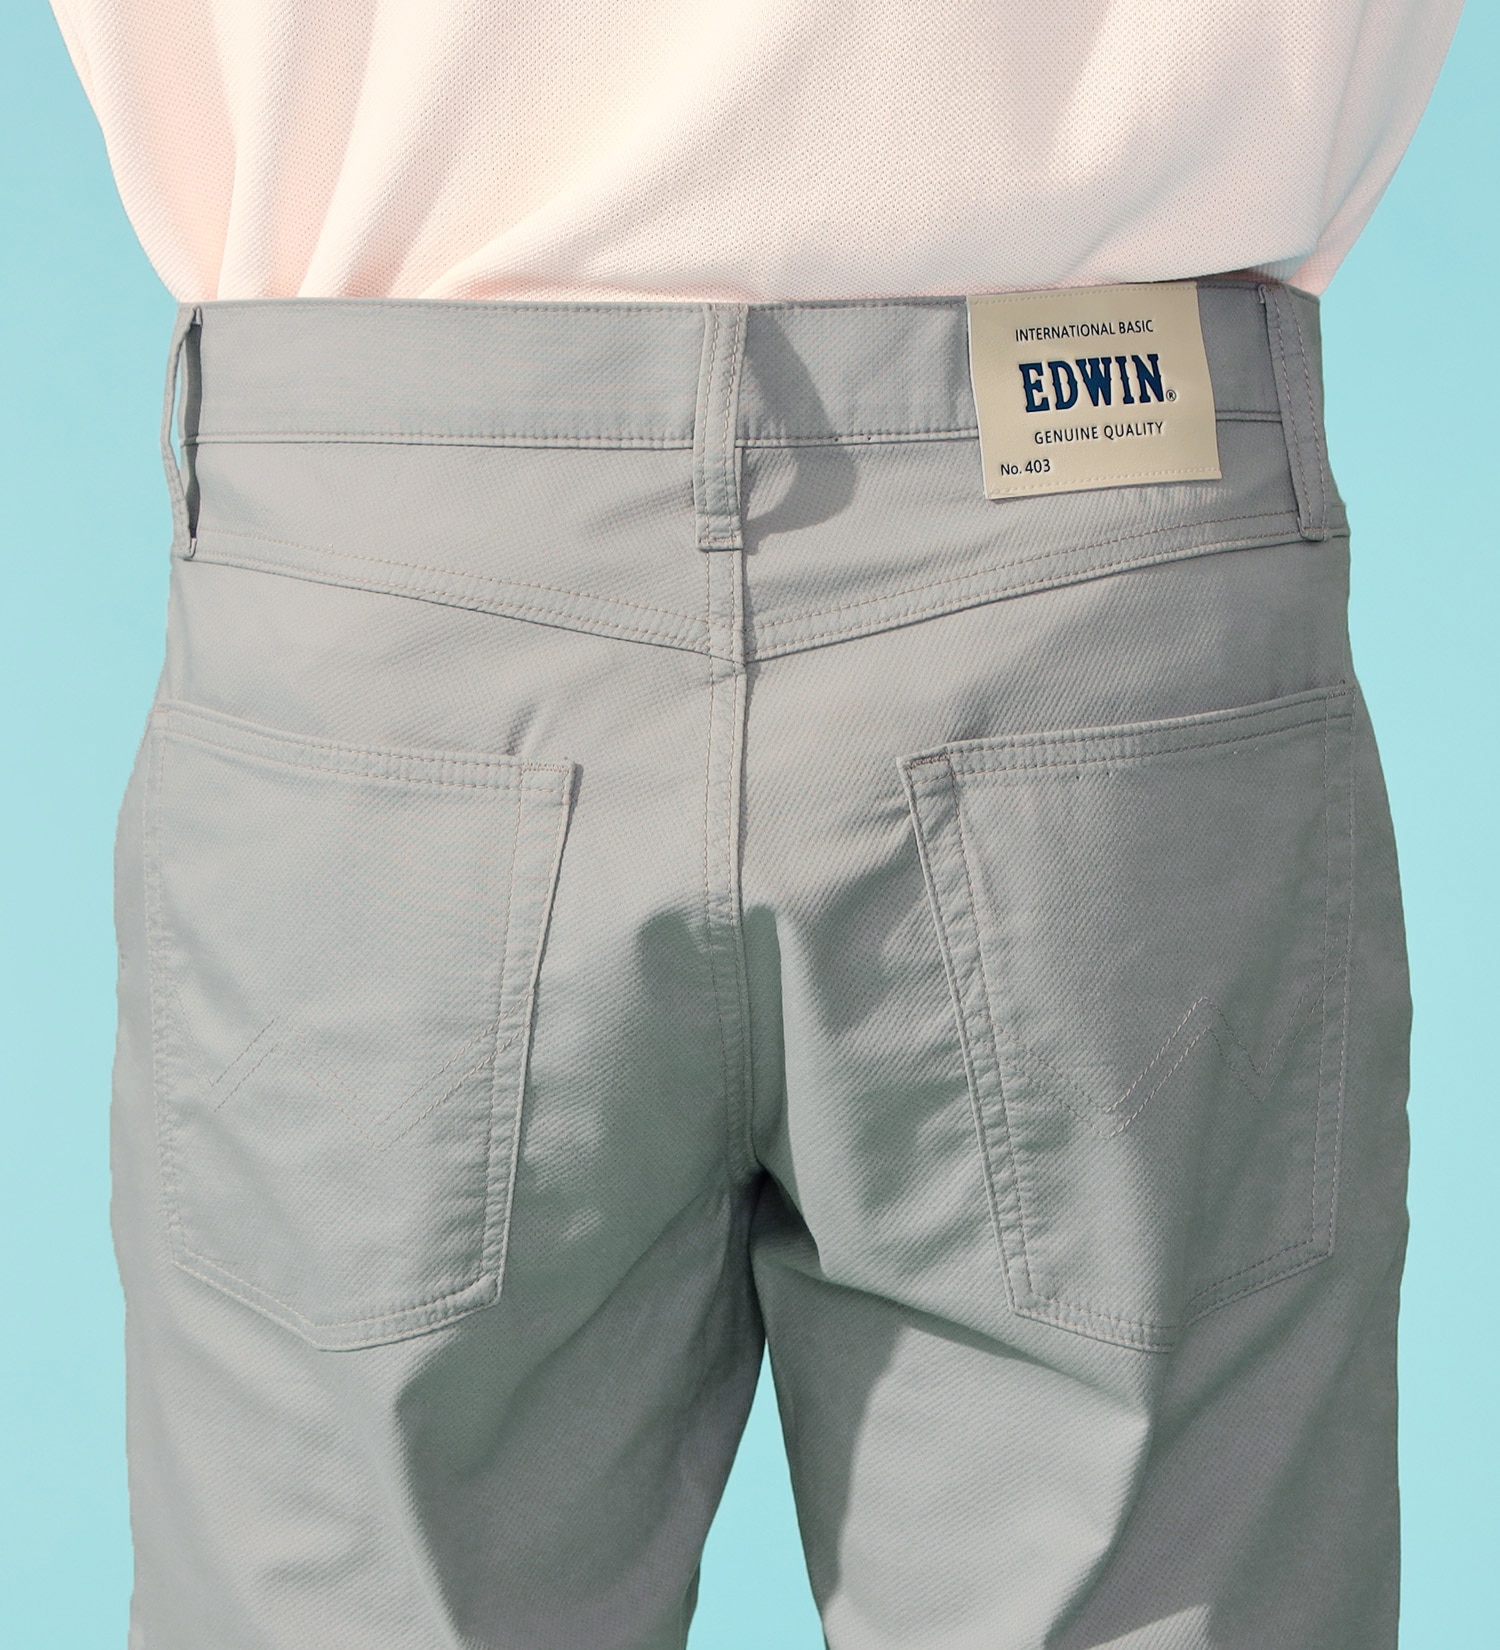 EDWIN(エドウイン)の【涼】インターナショナルベーシック レギュラーストレートパンツ COOLFLEX 裏メッシュ素材 最軽量 スラッシュポケット|パンツ/パンツ/メンズ|グレー